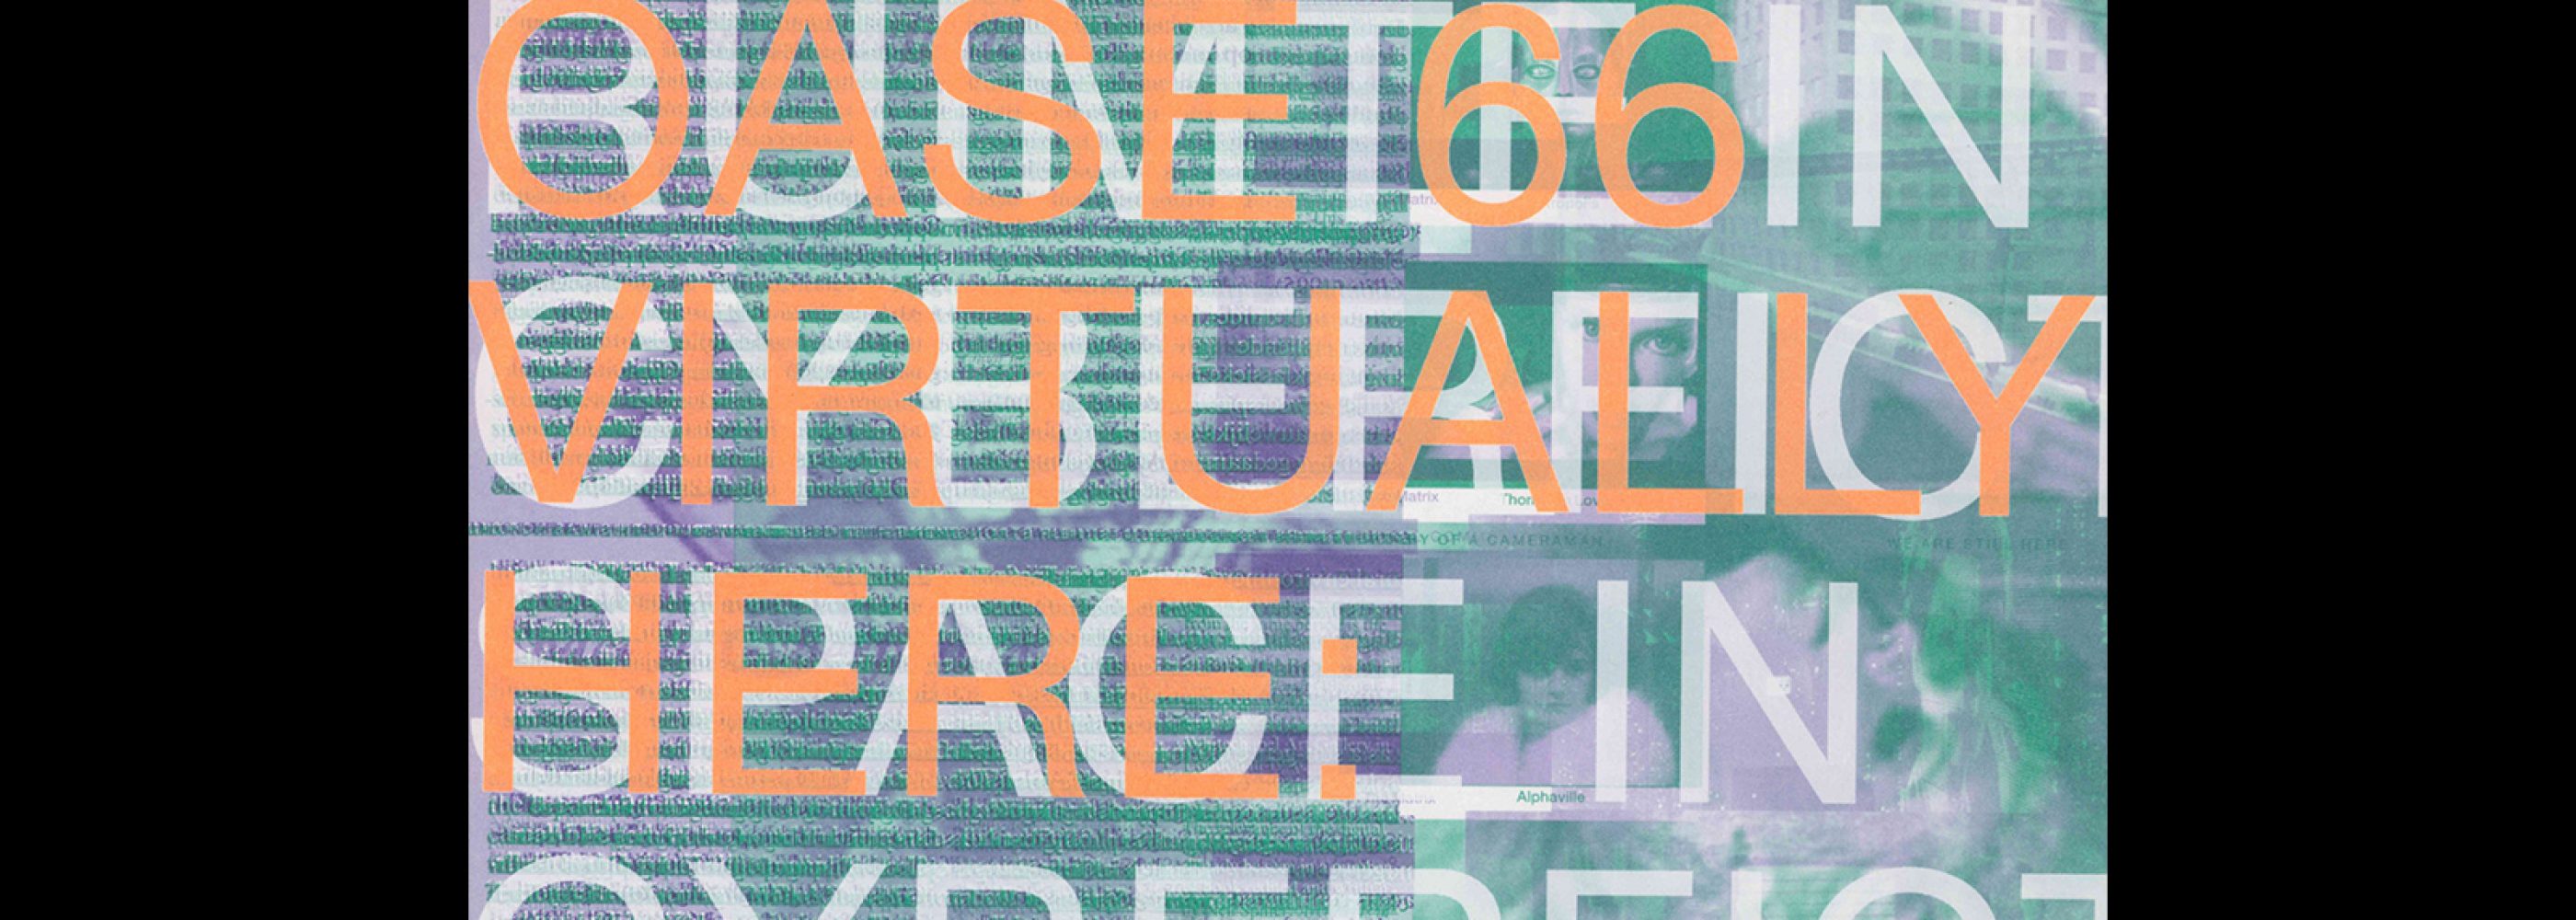 OASE 66, 2005, Virtually Here. Designed by Karel Martens, Werkplaats Typografie